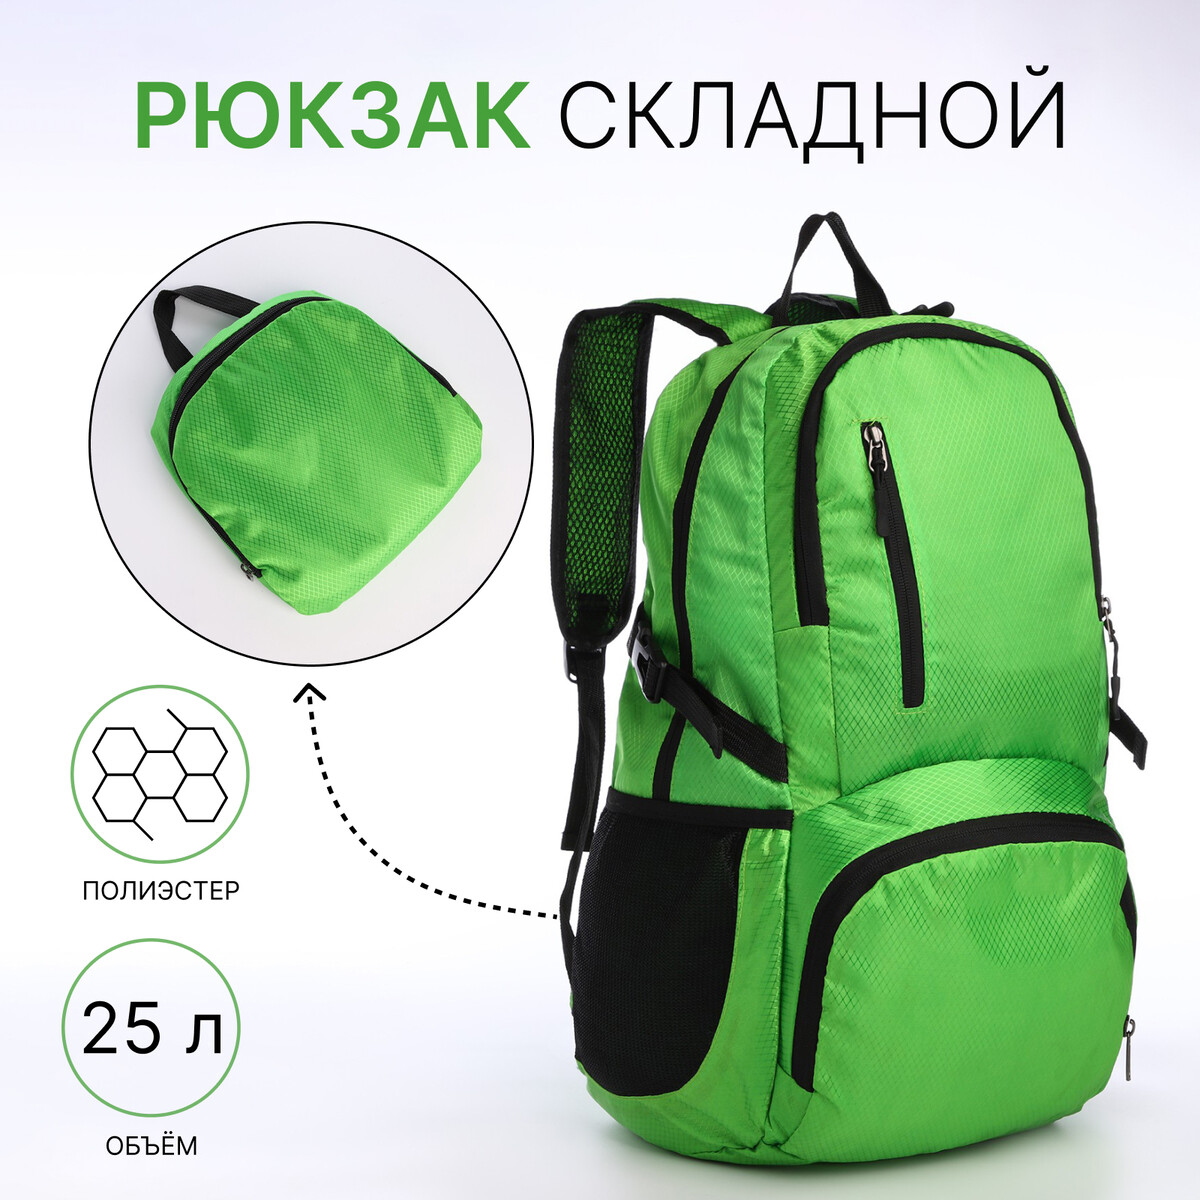 Рюкзак складной на молнии из текстиля, 5 карманов, цвет зеленый